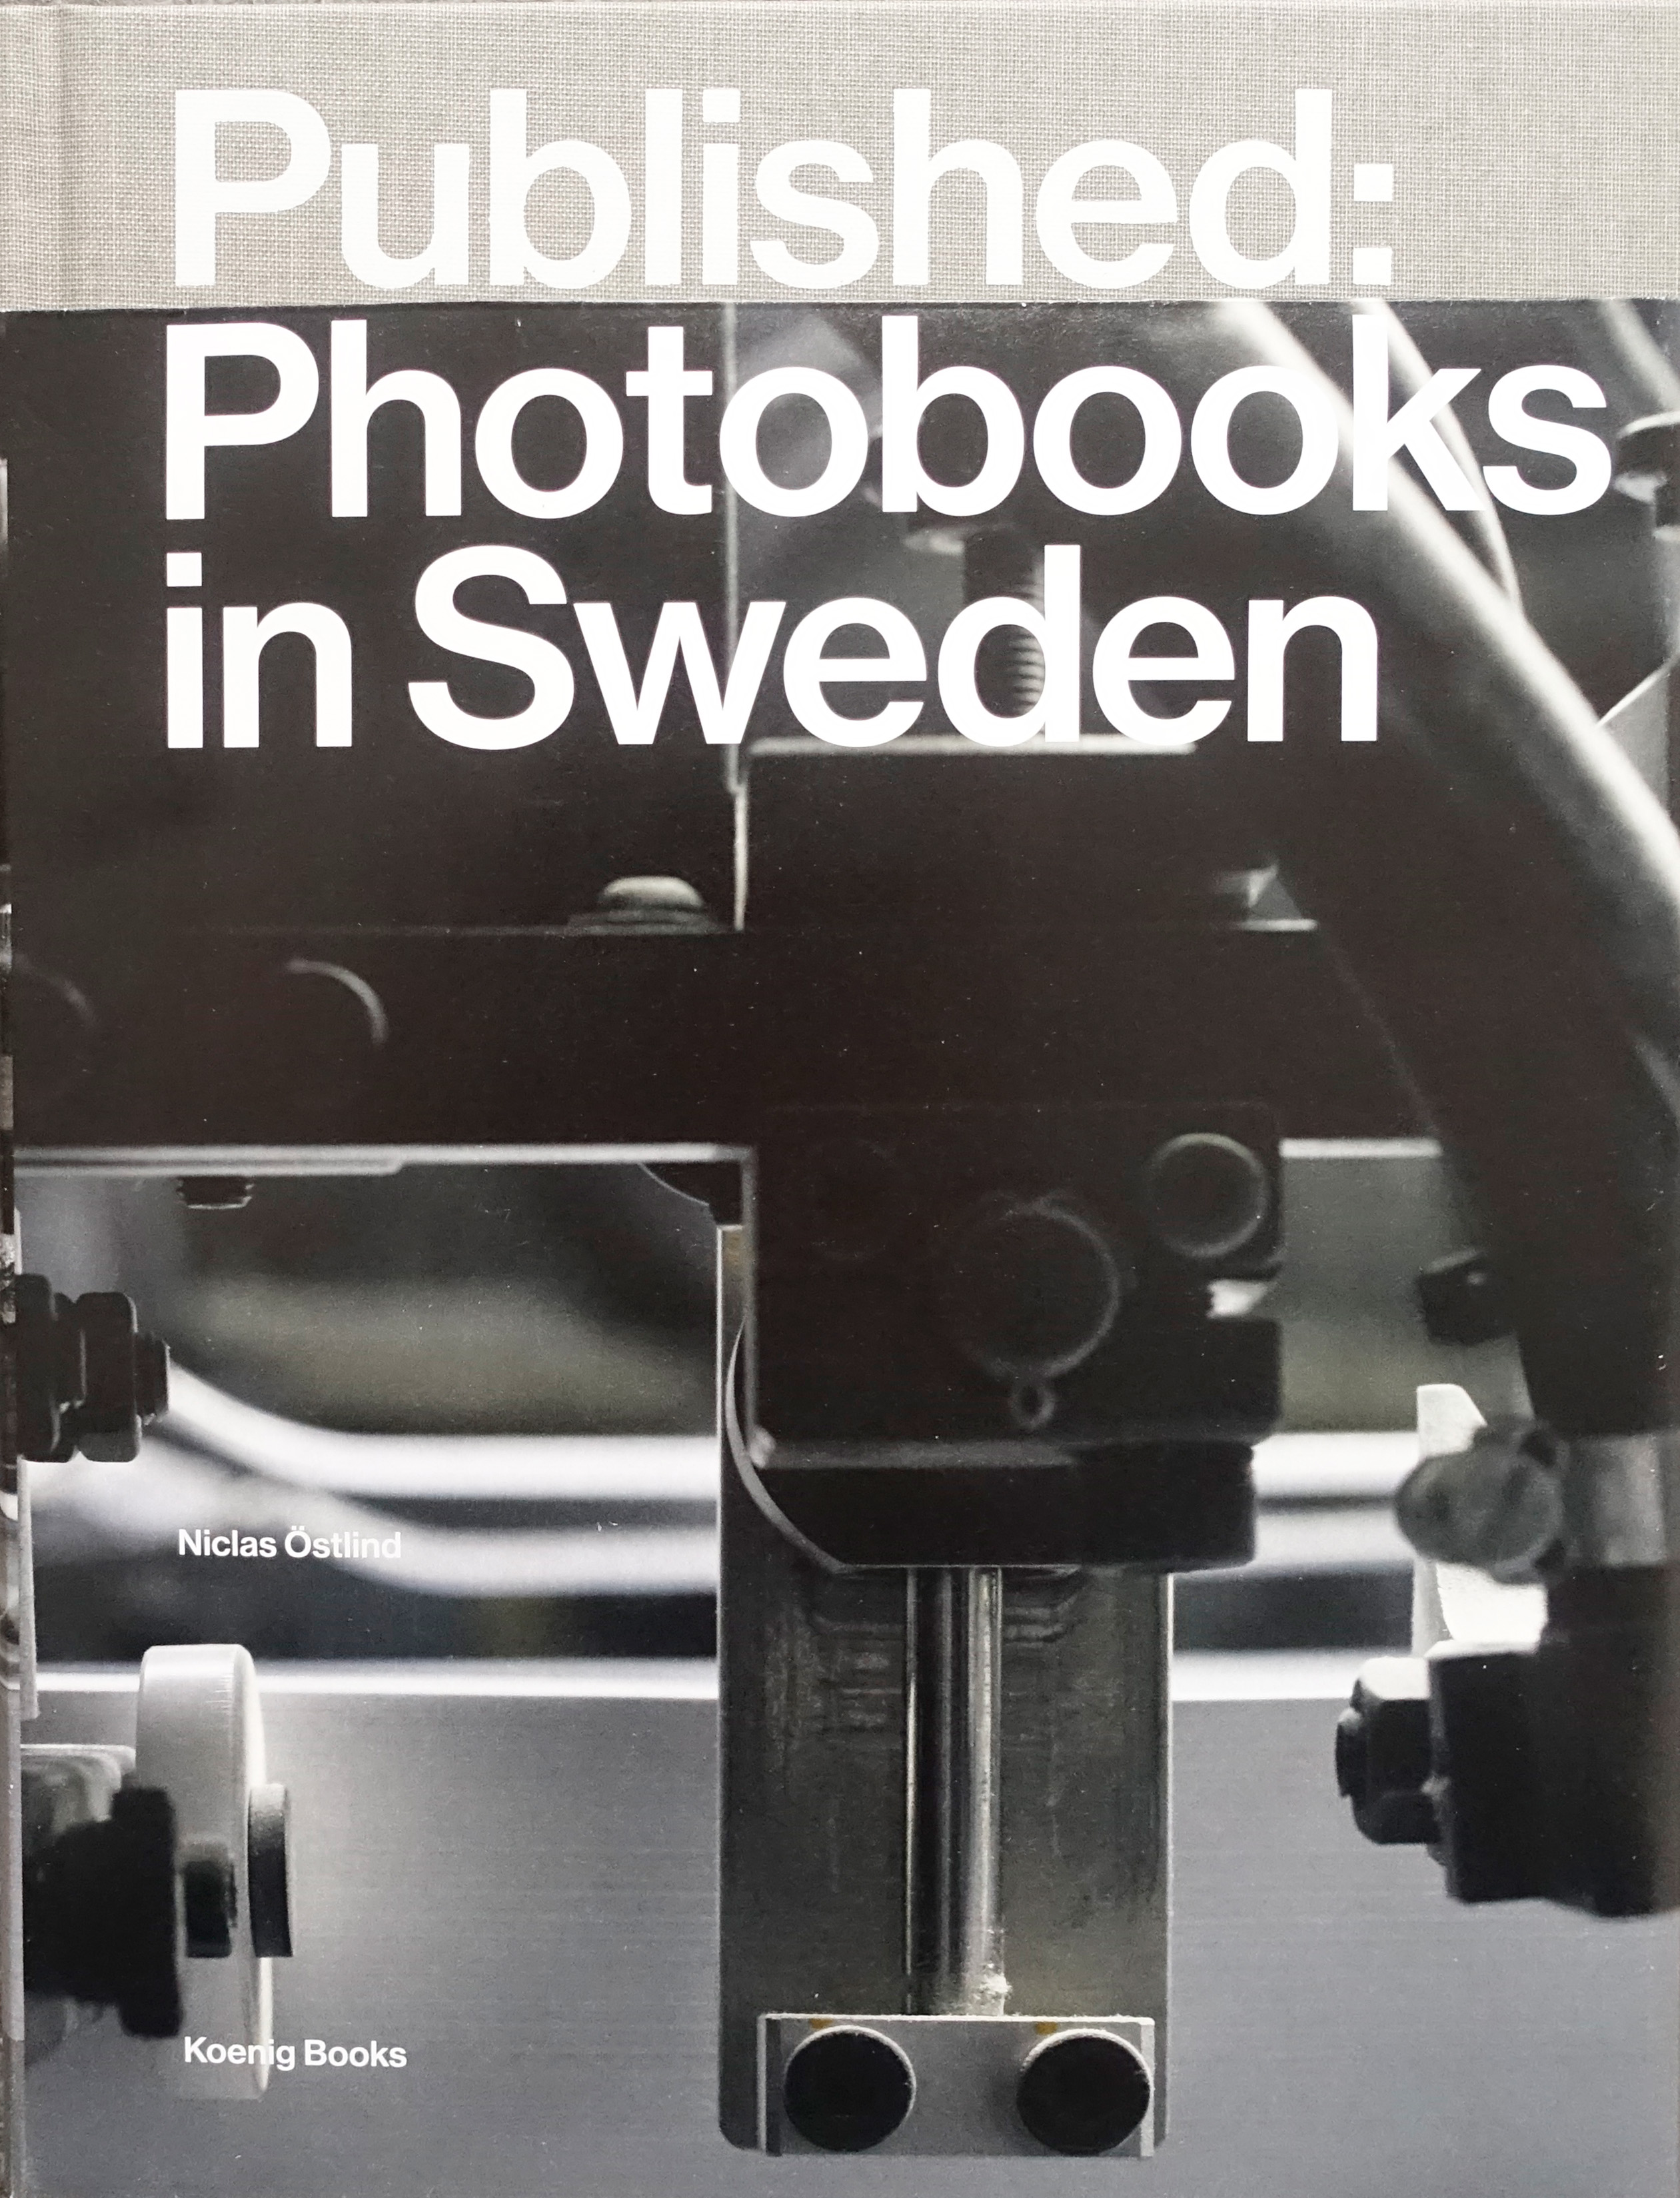 Niclas Östlind: ”Published: Photobooks in Sweden”